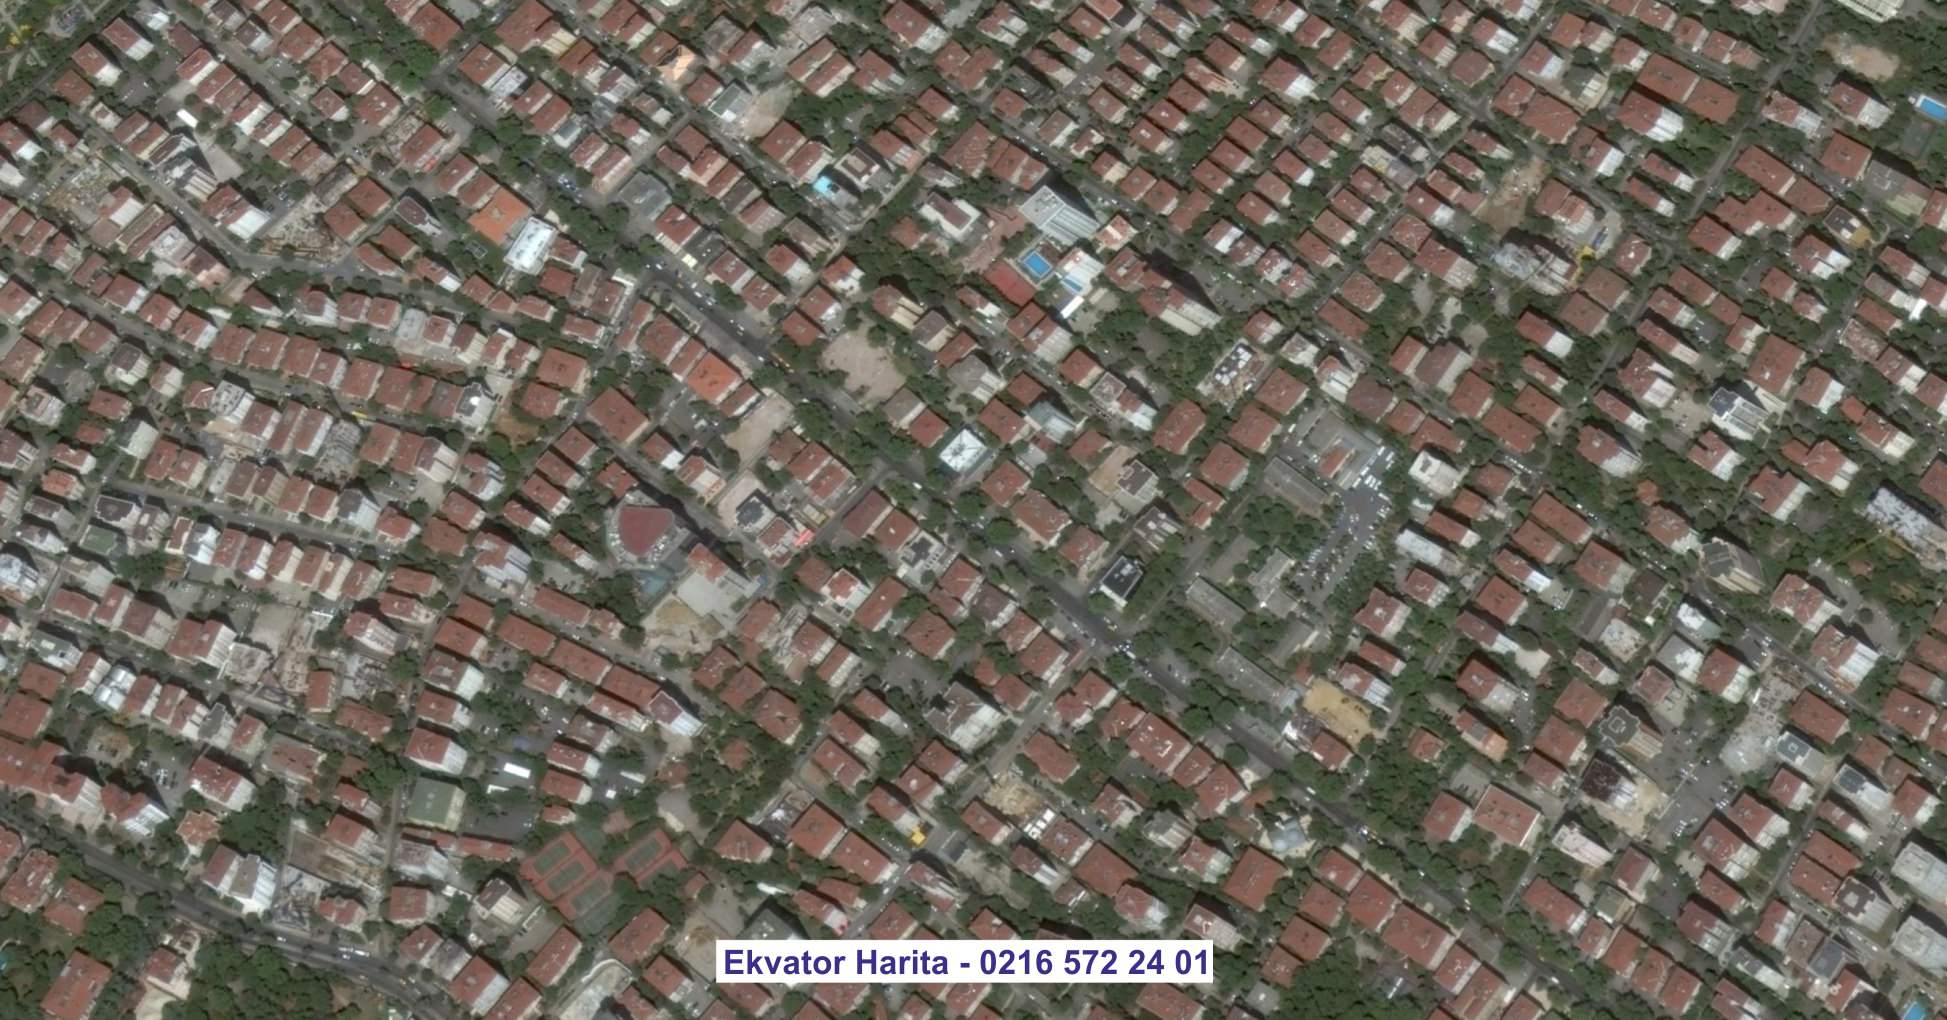 Çankırı Uydu Görüntüsü Örnek Fotoğrafı